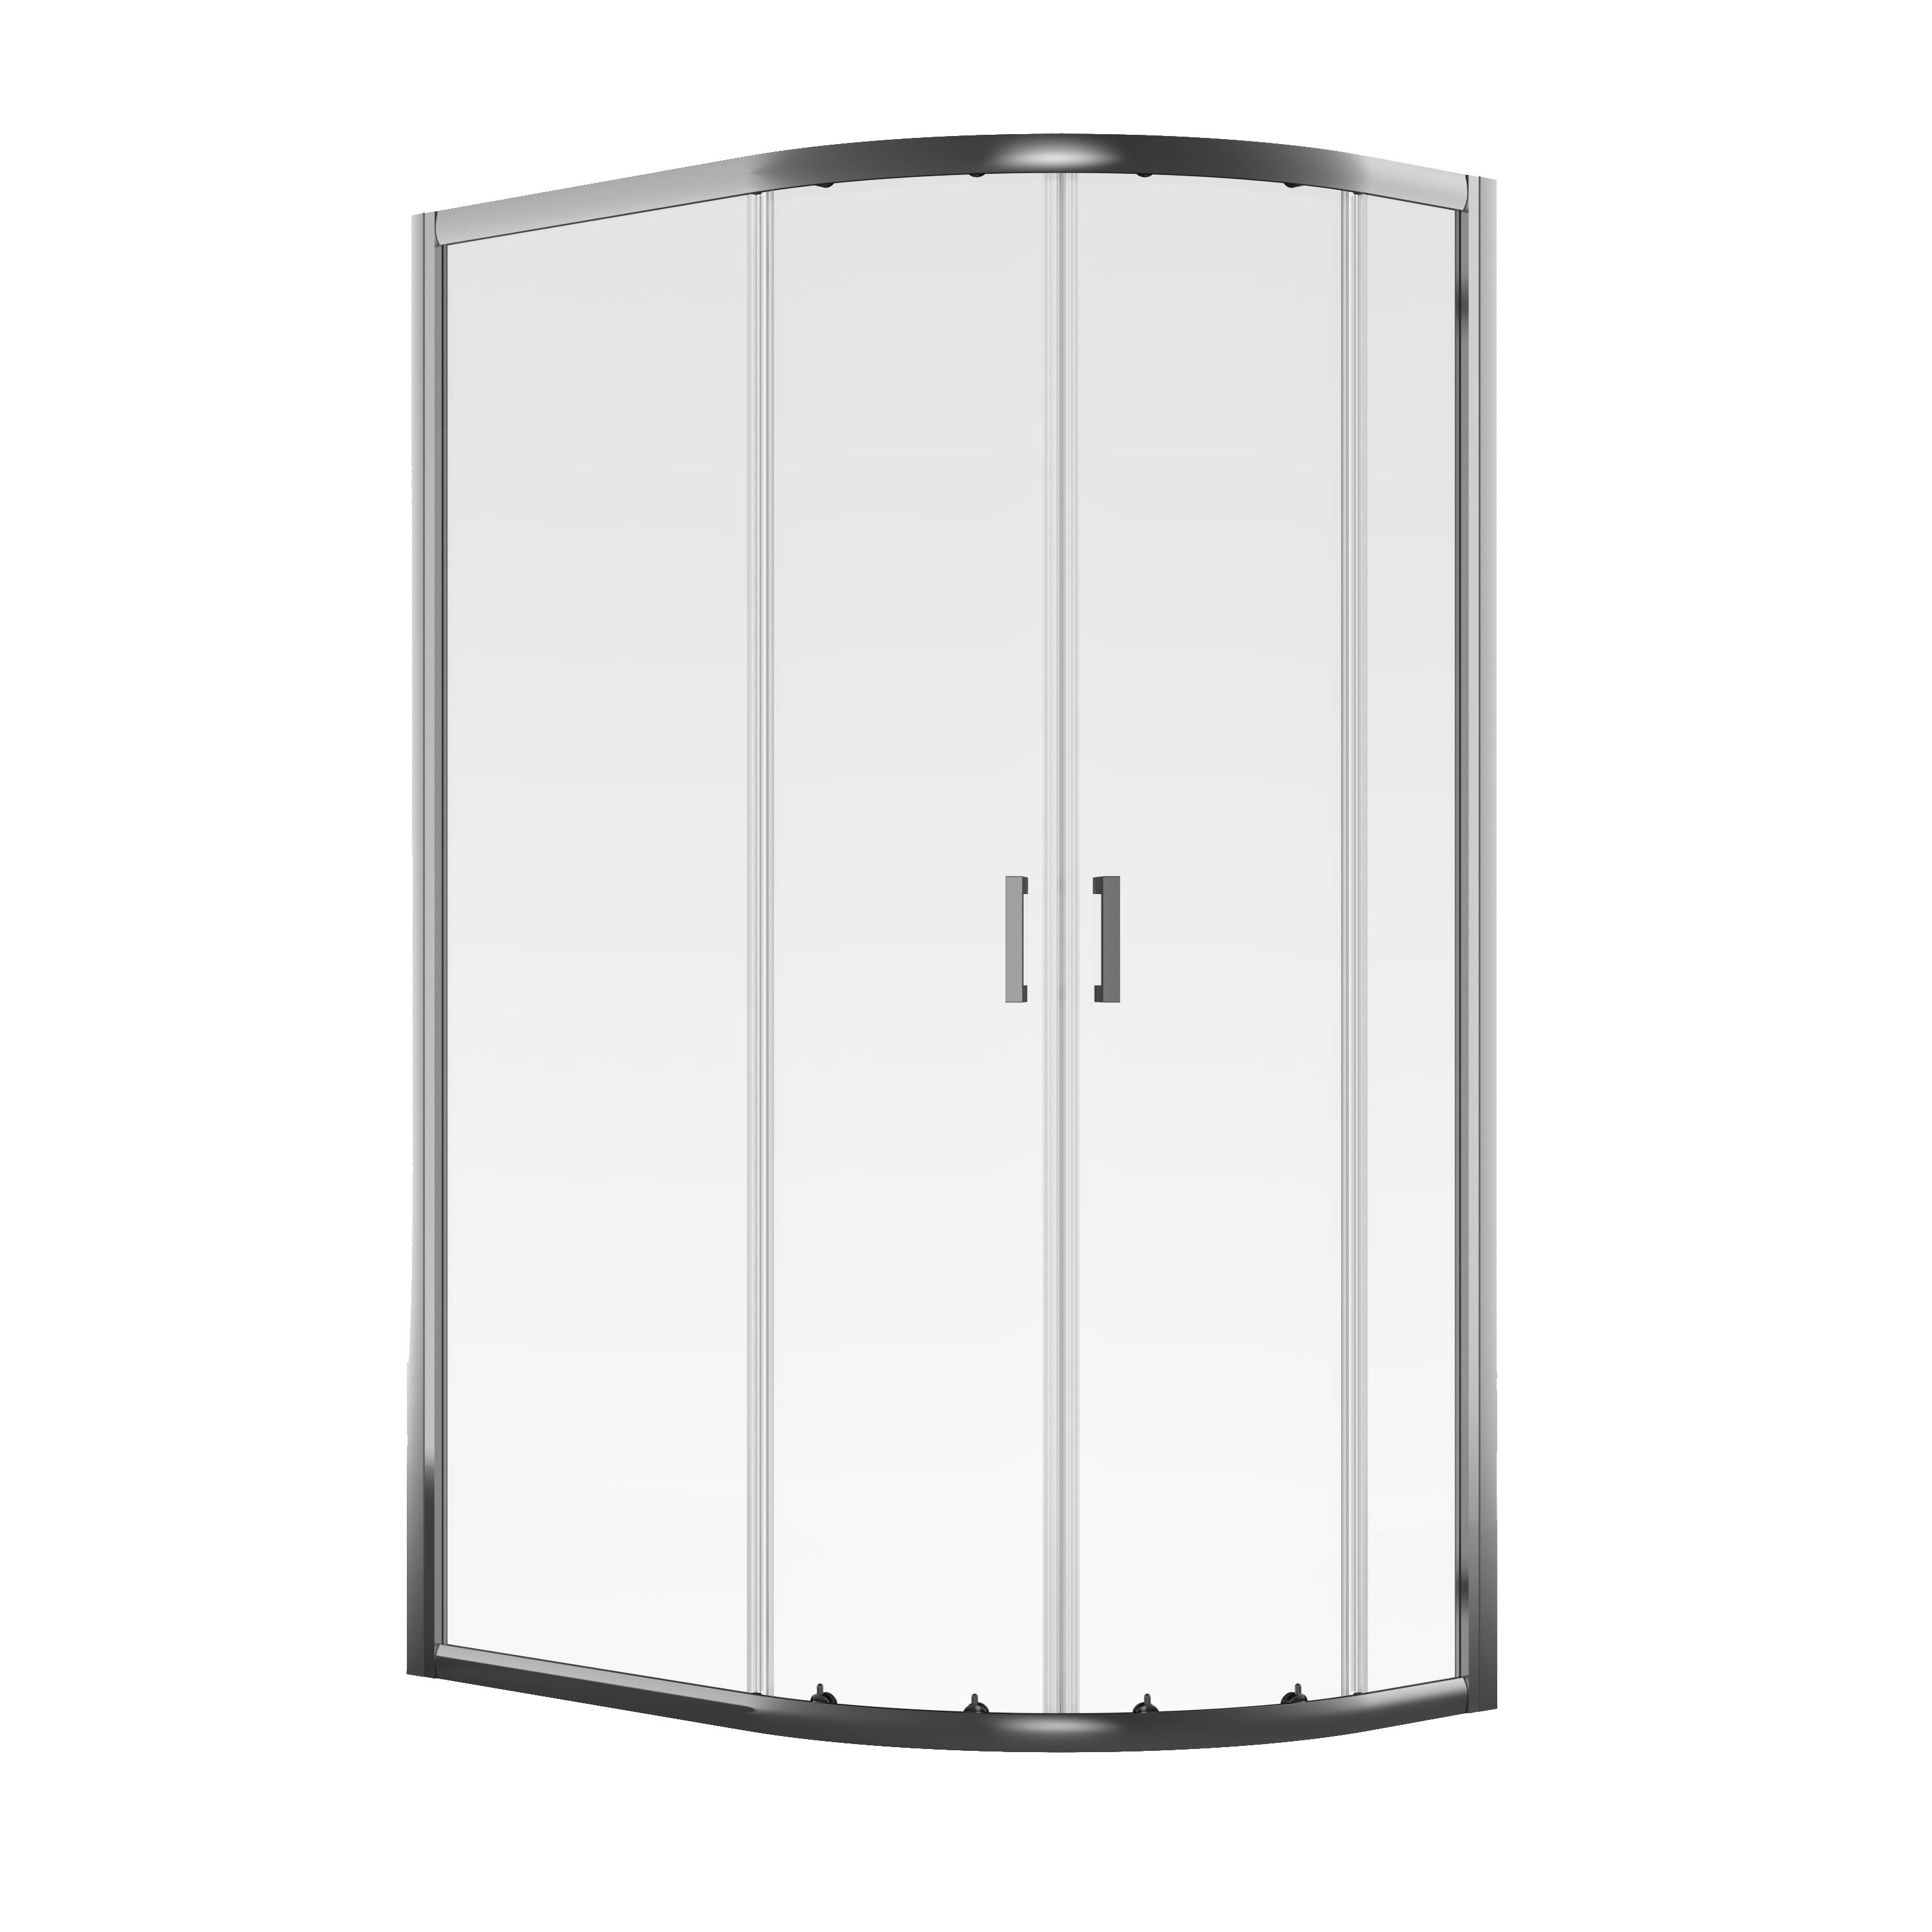 Aqualux Edge 6 Quad Clear glass Silver effect Offset quadrant Shower enclosure - Double sliding doors (W)80cm (D)100cm